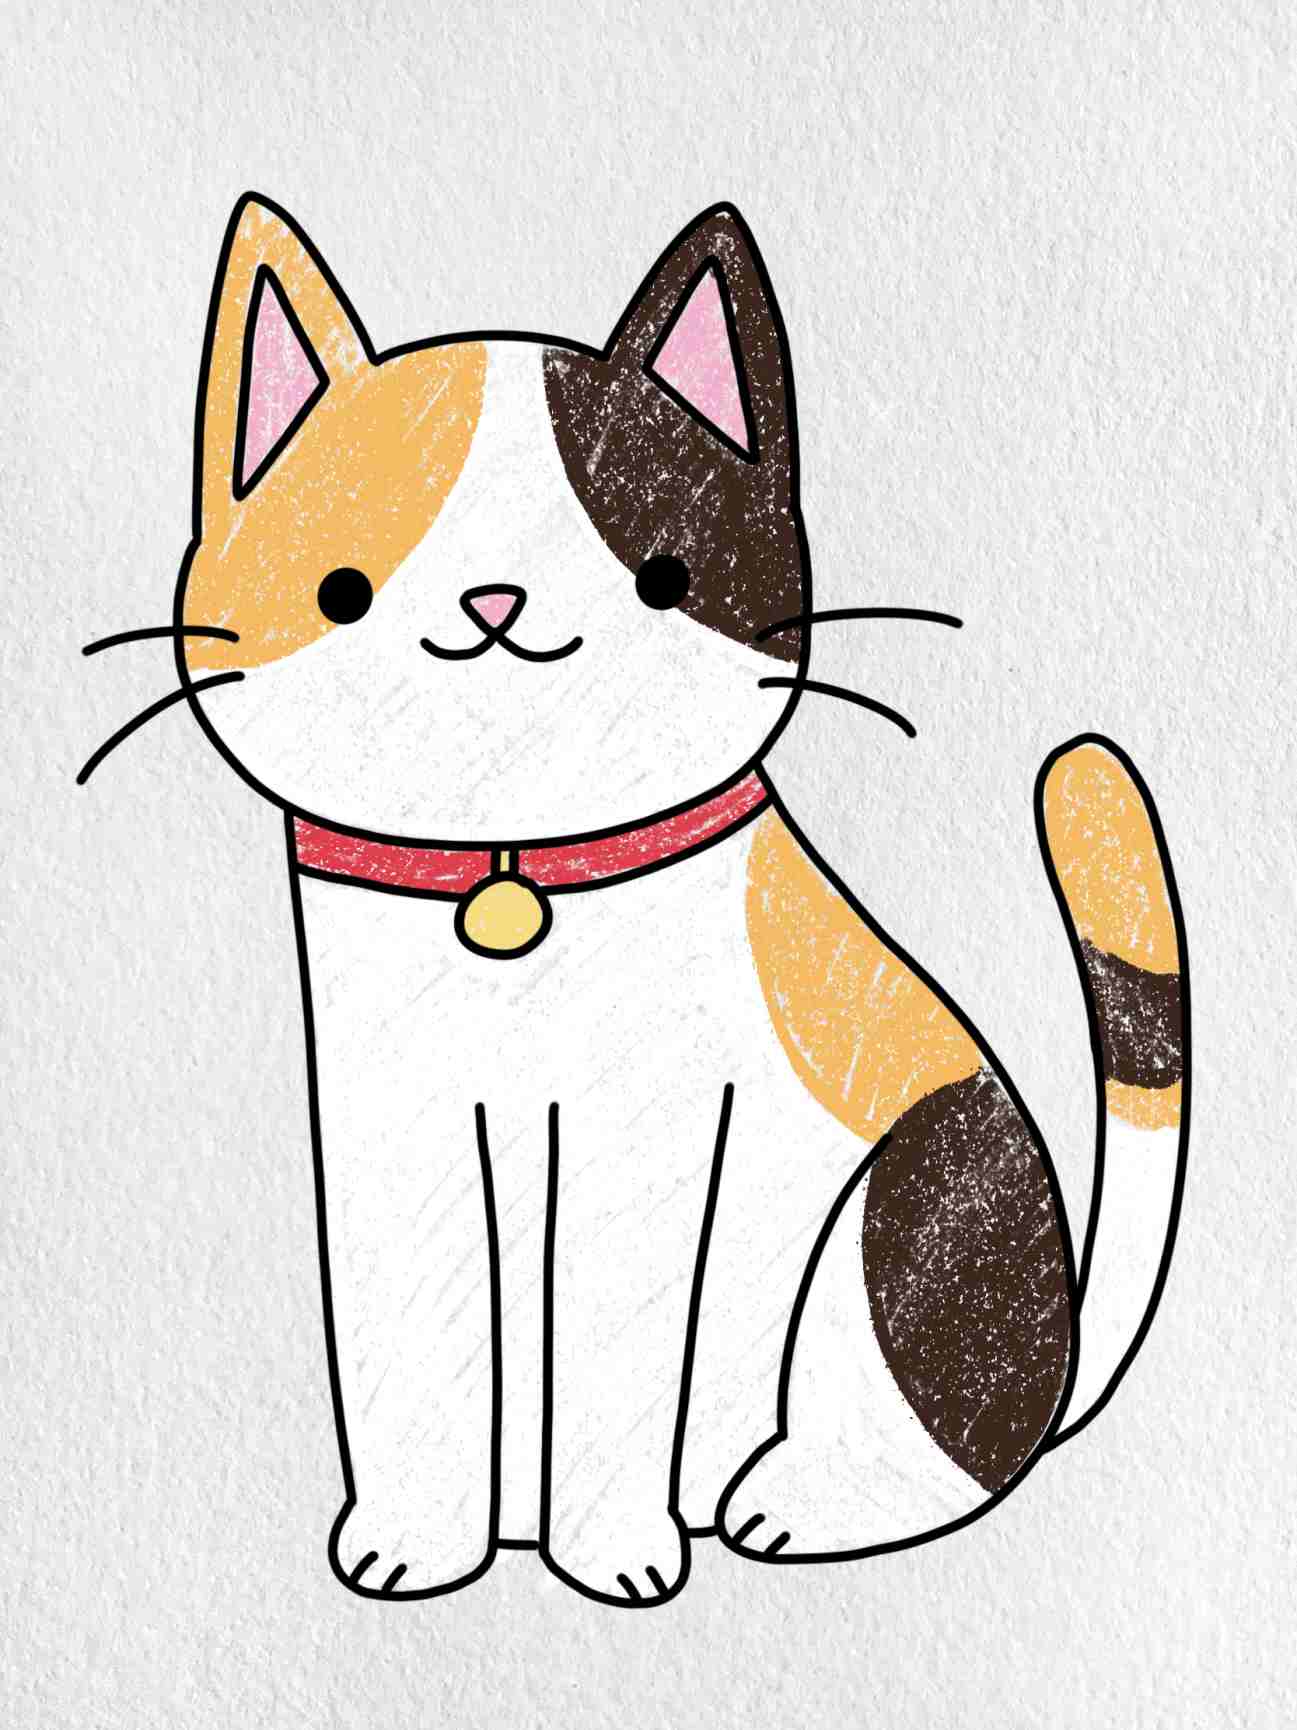 Biểu Tượng Khuôn Mặt Mèo Hoạt Hình Vẽ Tay Đơn Giản Bốn Biến Thể Màu Trên  Màu Trắng Hình minh họa Sẵn có  Tải xuống Hình ảnh Ngay bây giờ  iStock